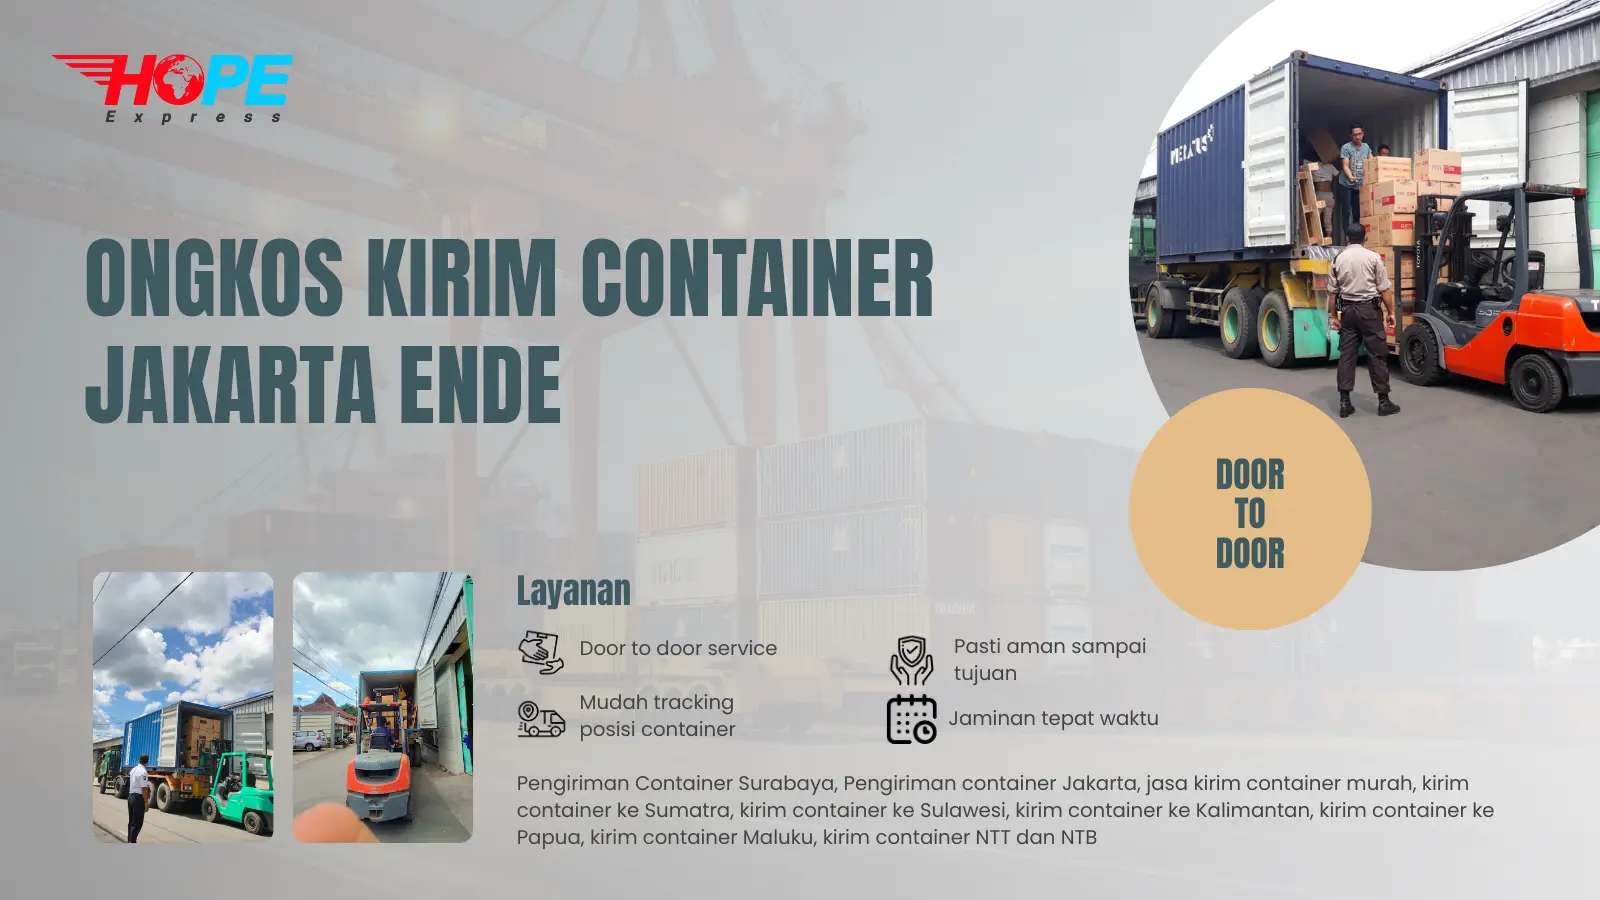 Ongkos Kirim Container Jakarta Ende